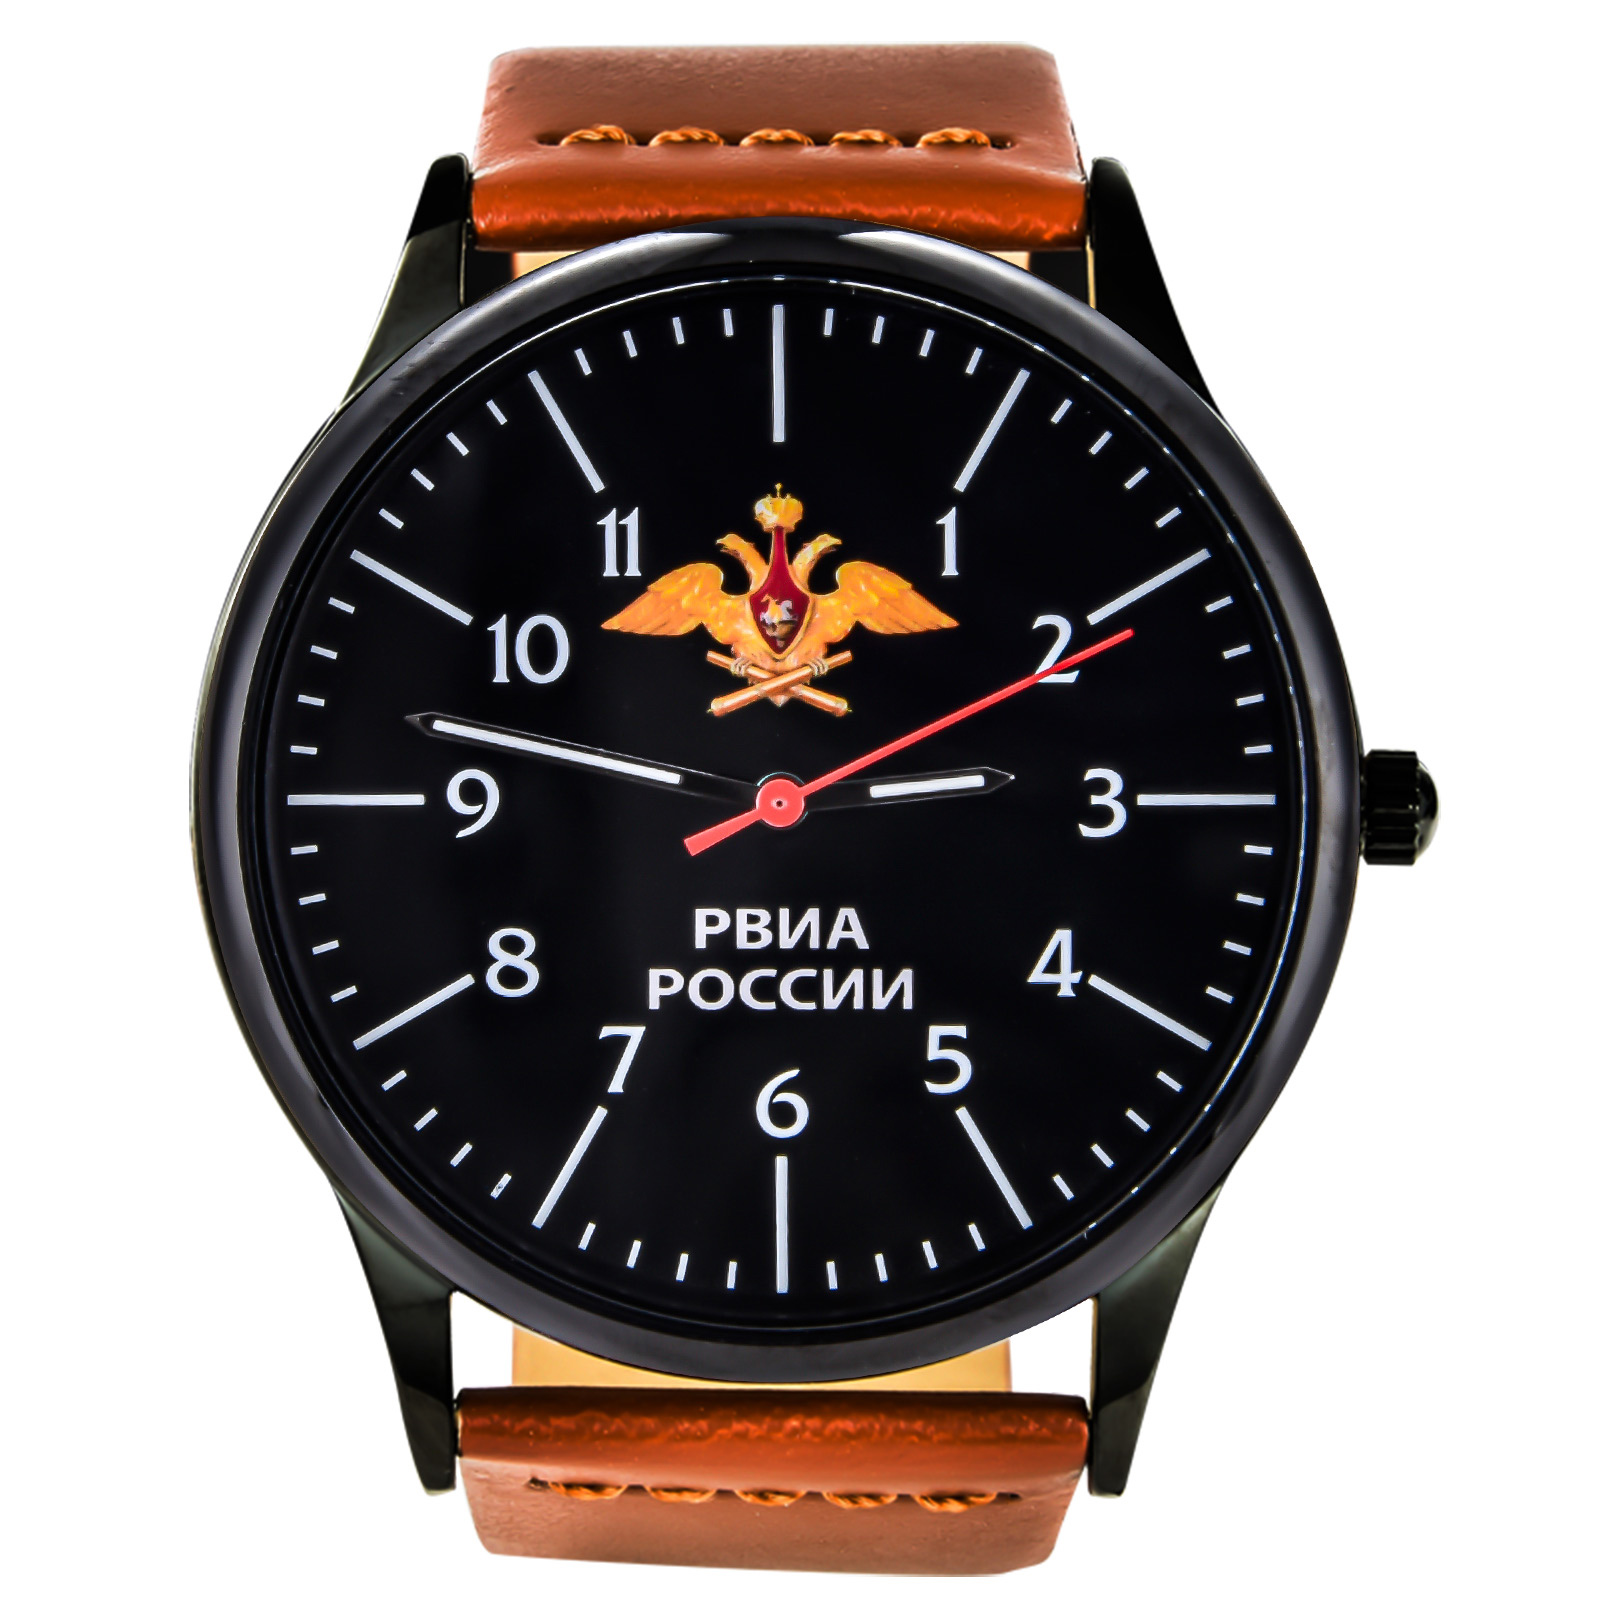 Армейские командирские часы РВиА купить в Военпро